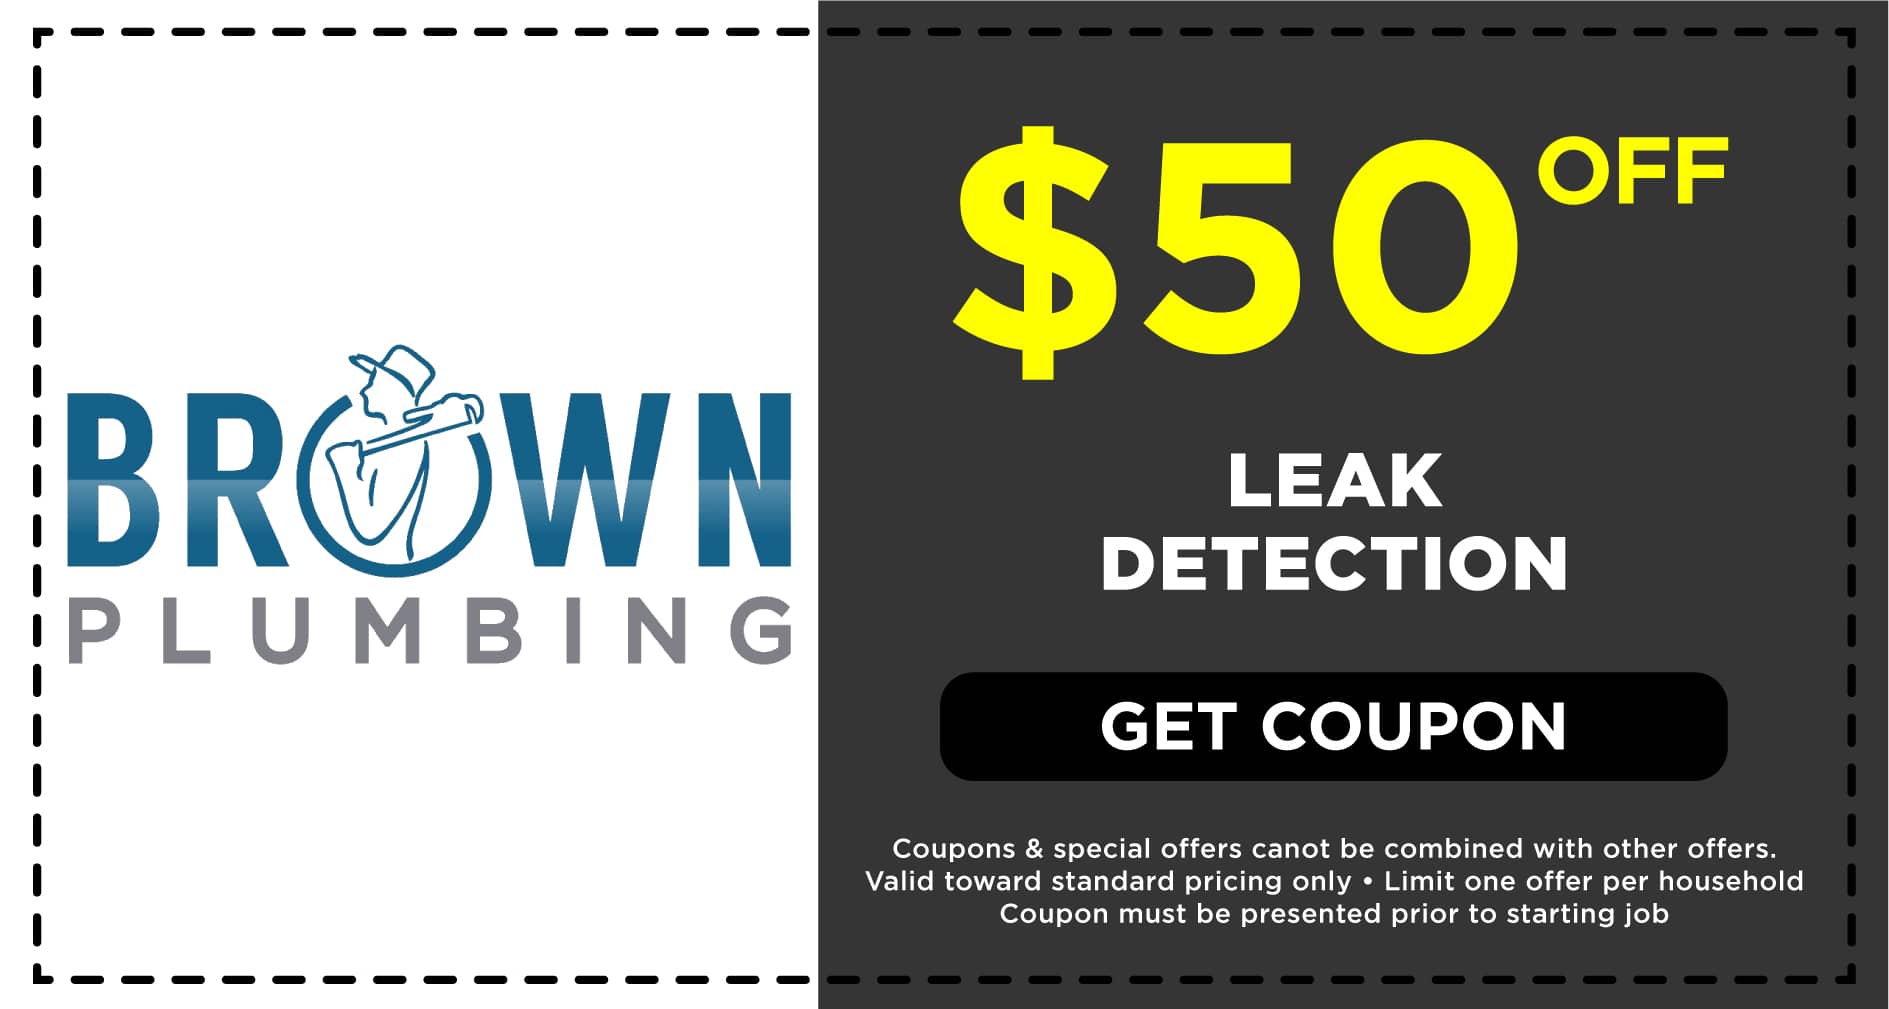 Brown Plumbing Leak Detection Coupon